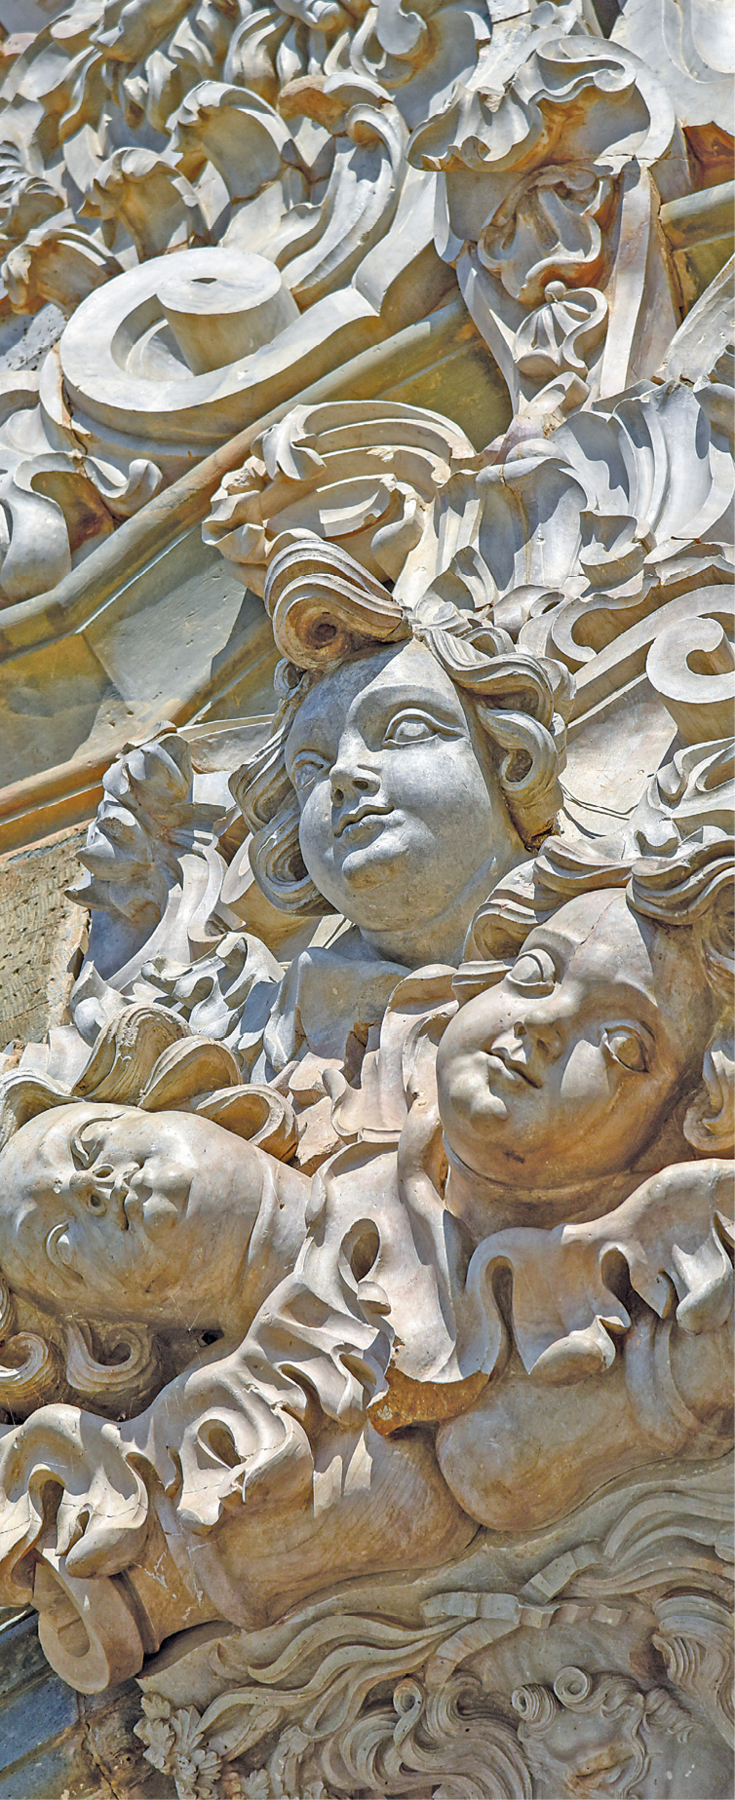 Fotografia. Destaque para esculturas em relevo, feitas com pedra-sabão. Diversos rostos humanos com cabelos ondulados estão esculpidos nela.